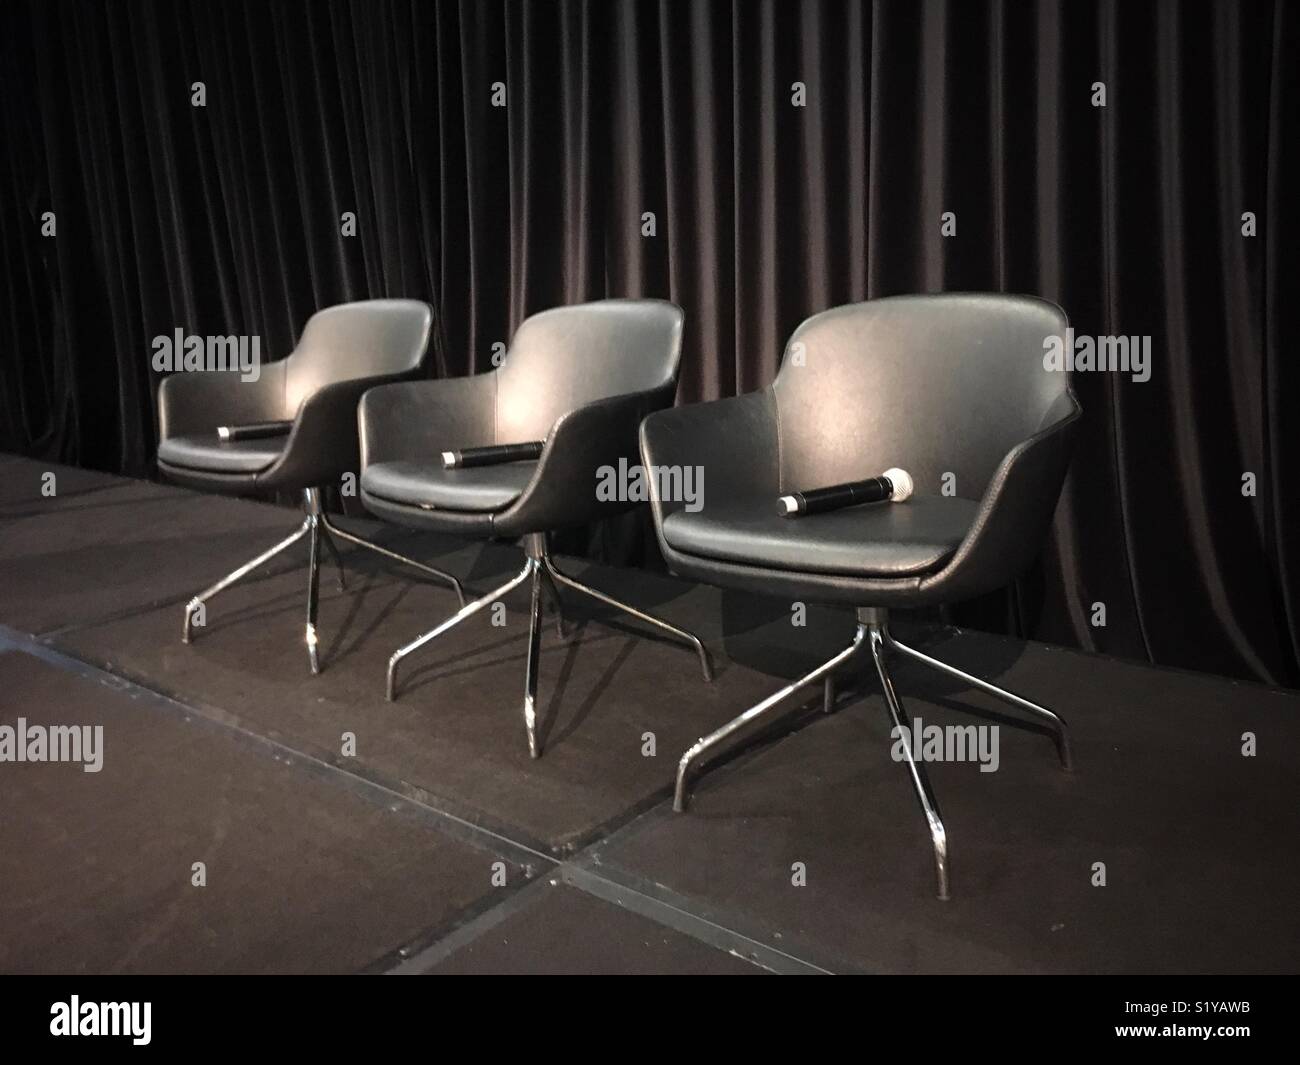 Tres sillas con micrófonos contra una cortina negra. Foto de stock